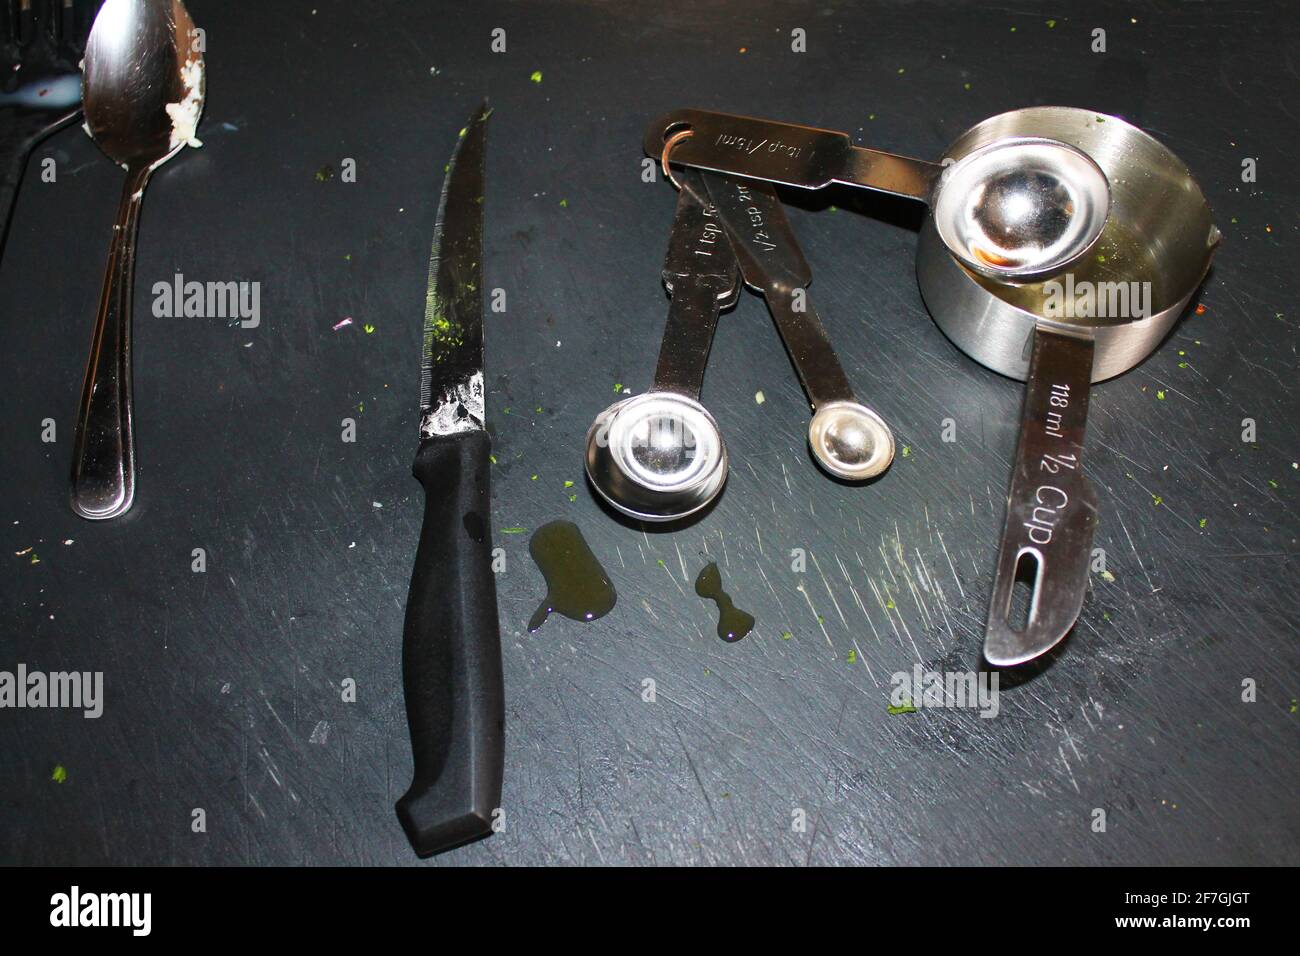 Eine Nahaufnahme von Kochutensilien, die für die Zubereitung von Speisen verwendet wurden, auf einem schwarzen Schiefertafel. Stockfoto